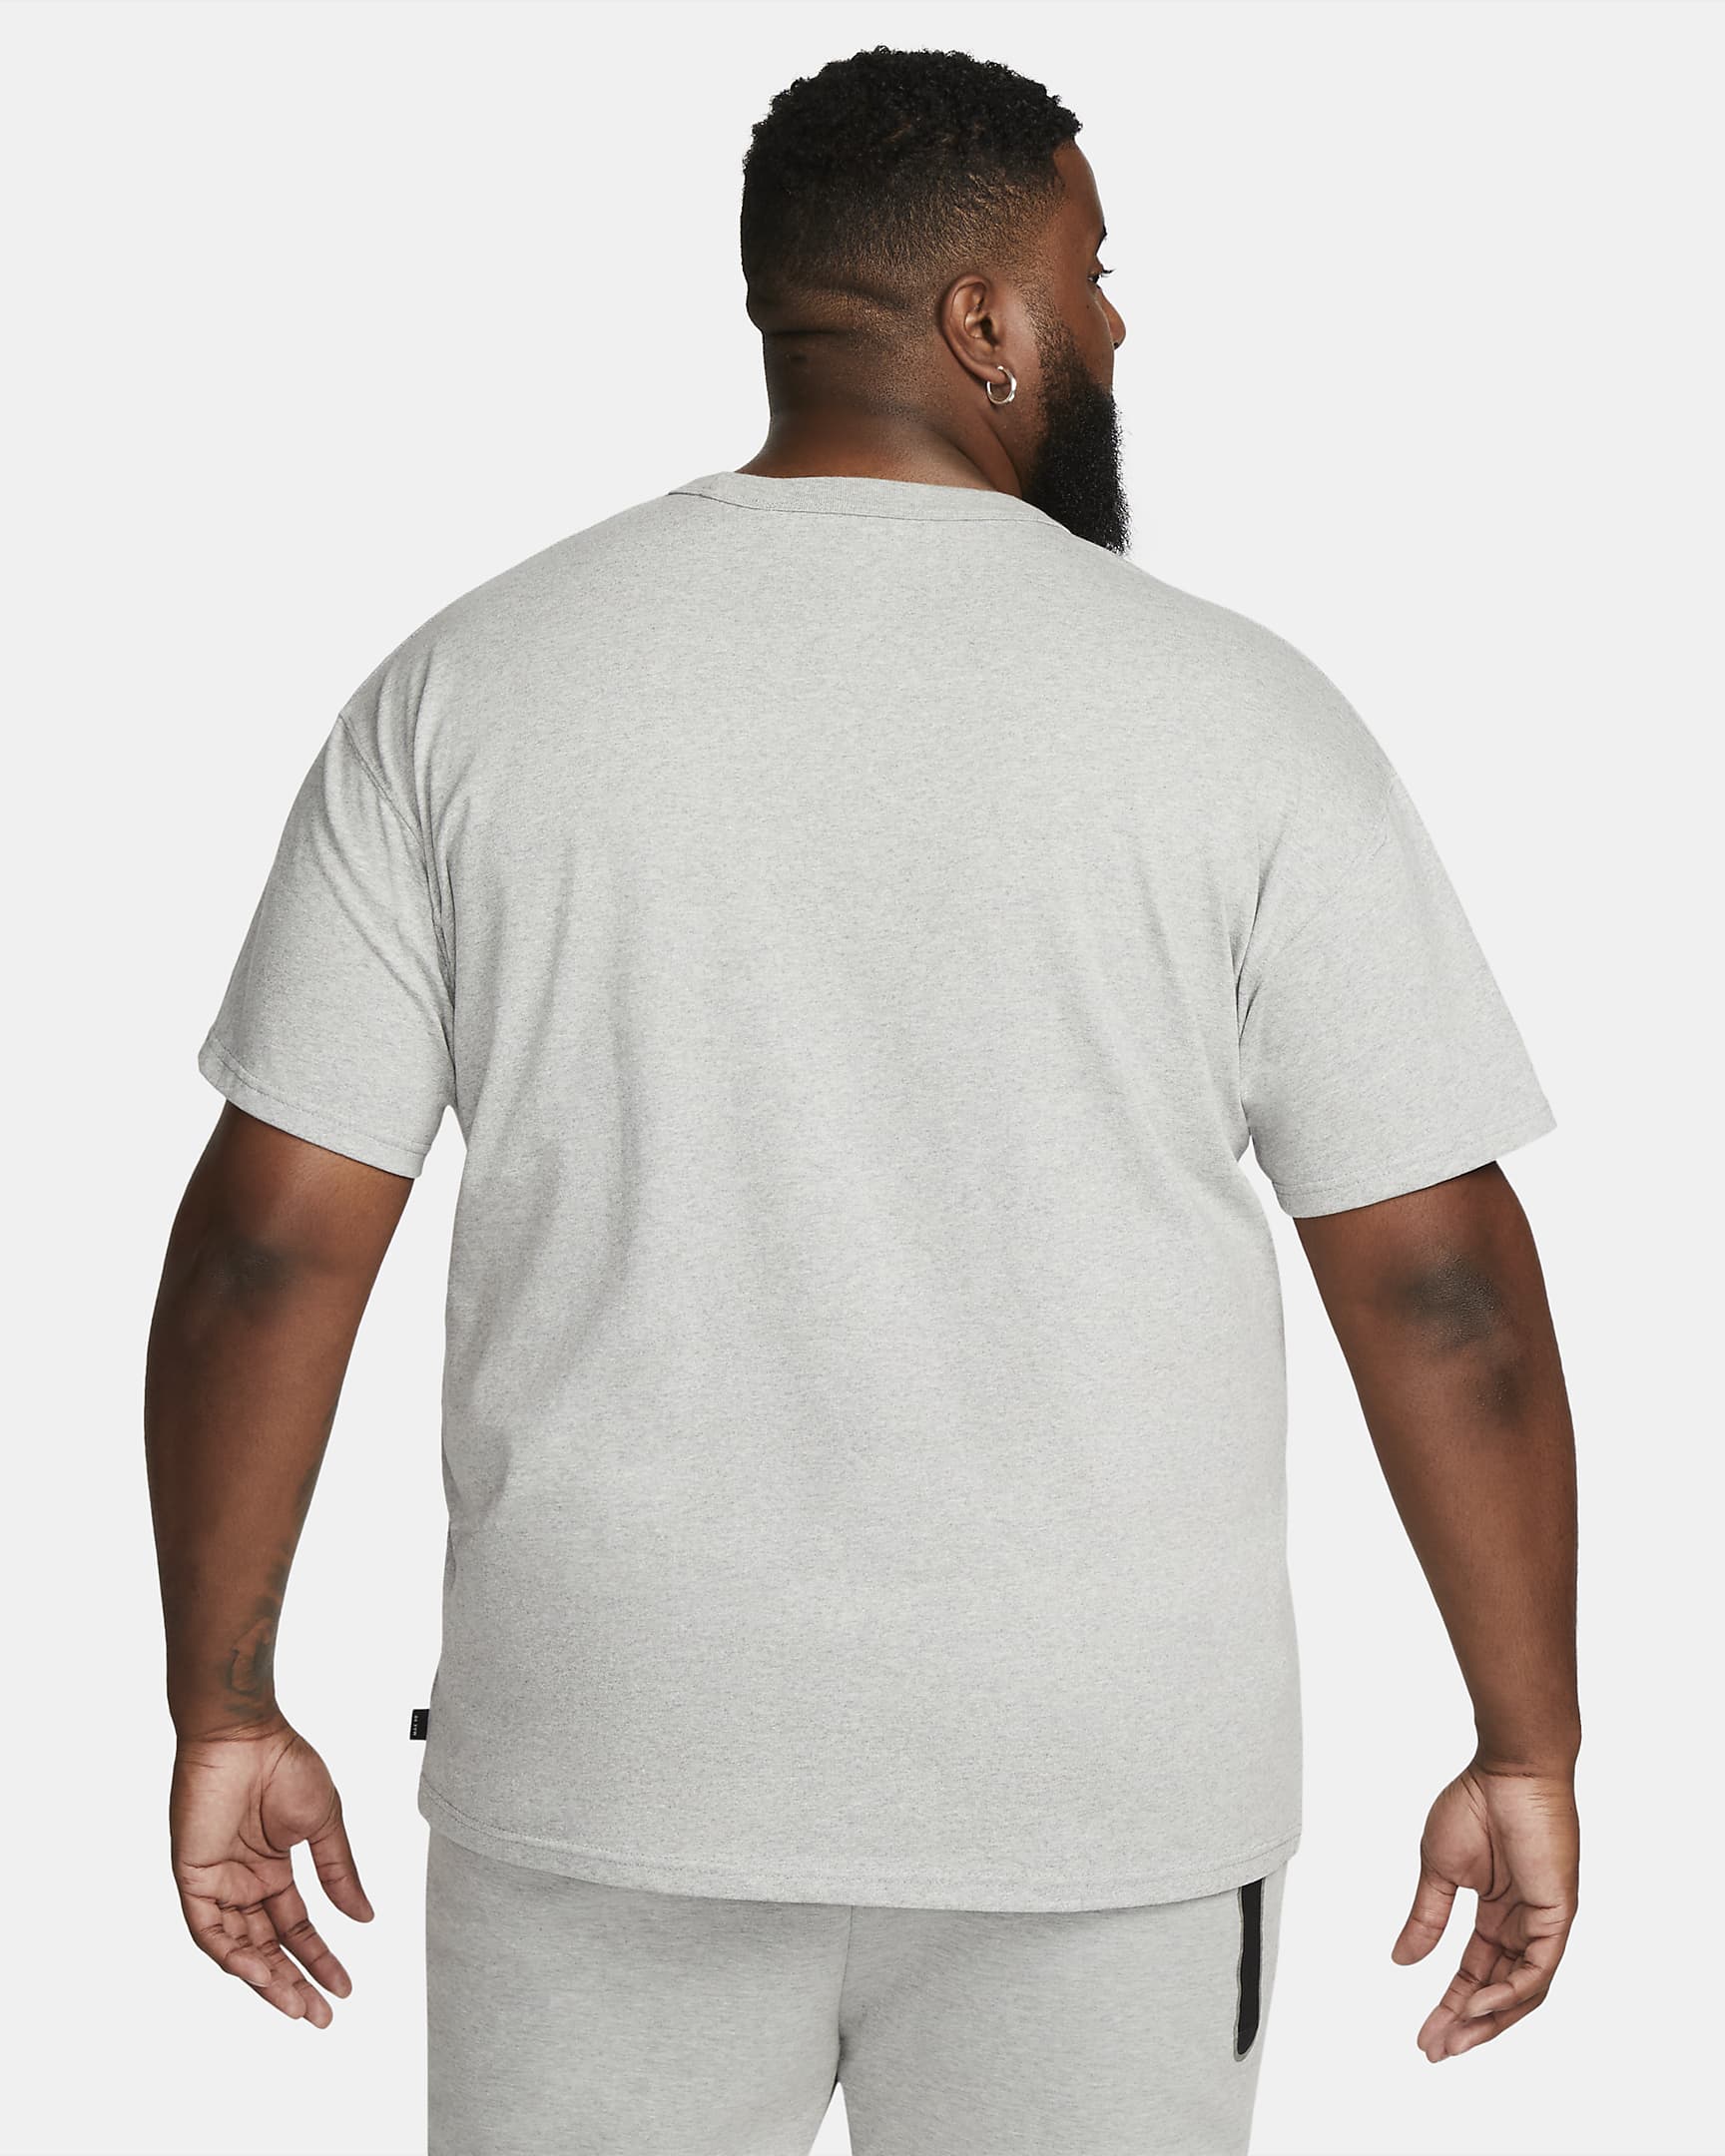 T-shirt Nike Sportswear Premium Essentials para homem - Cinzento Heather escuro